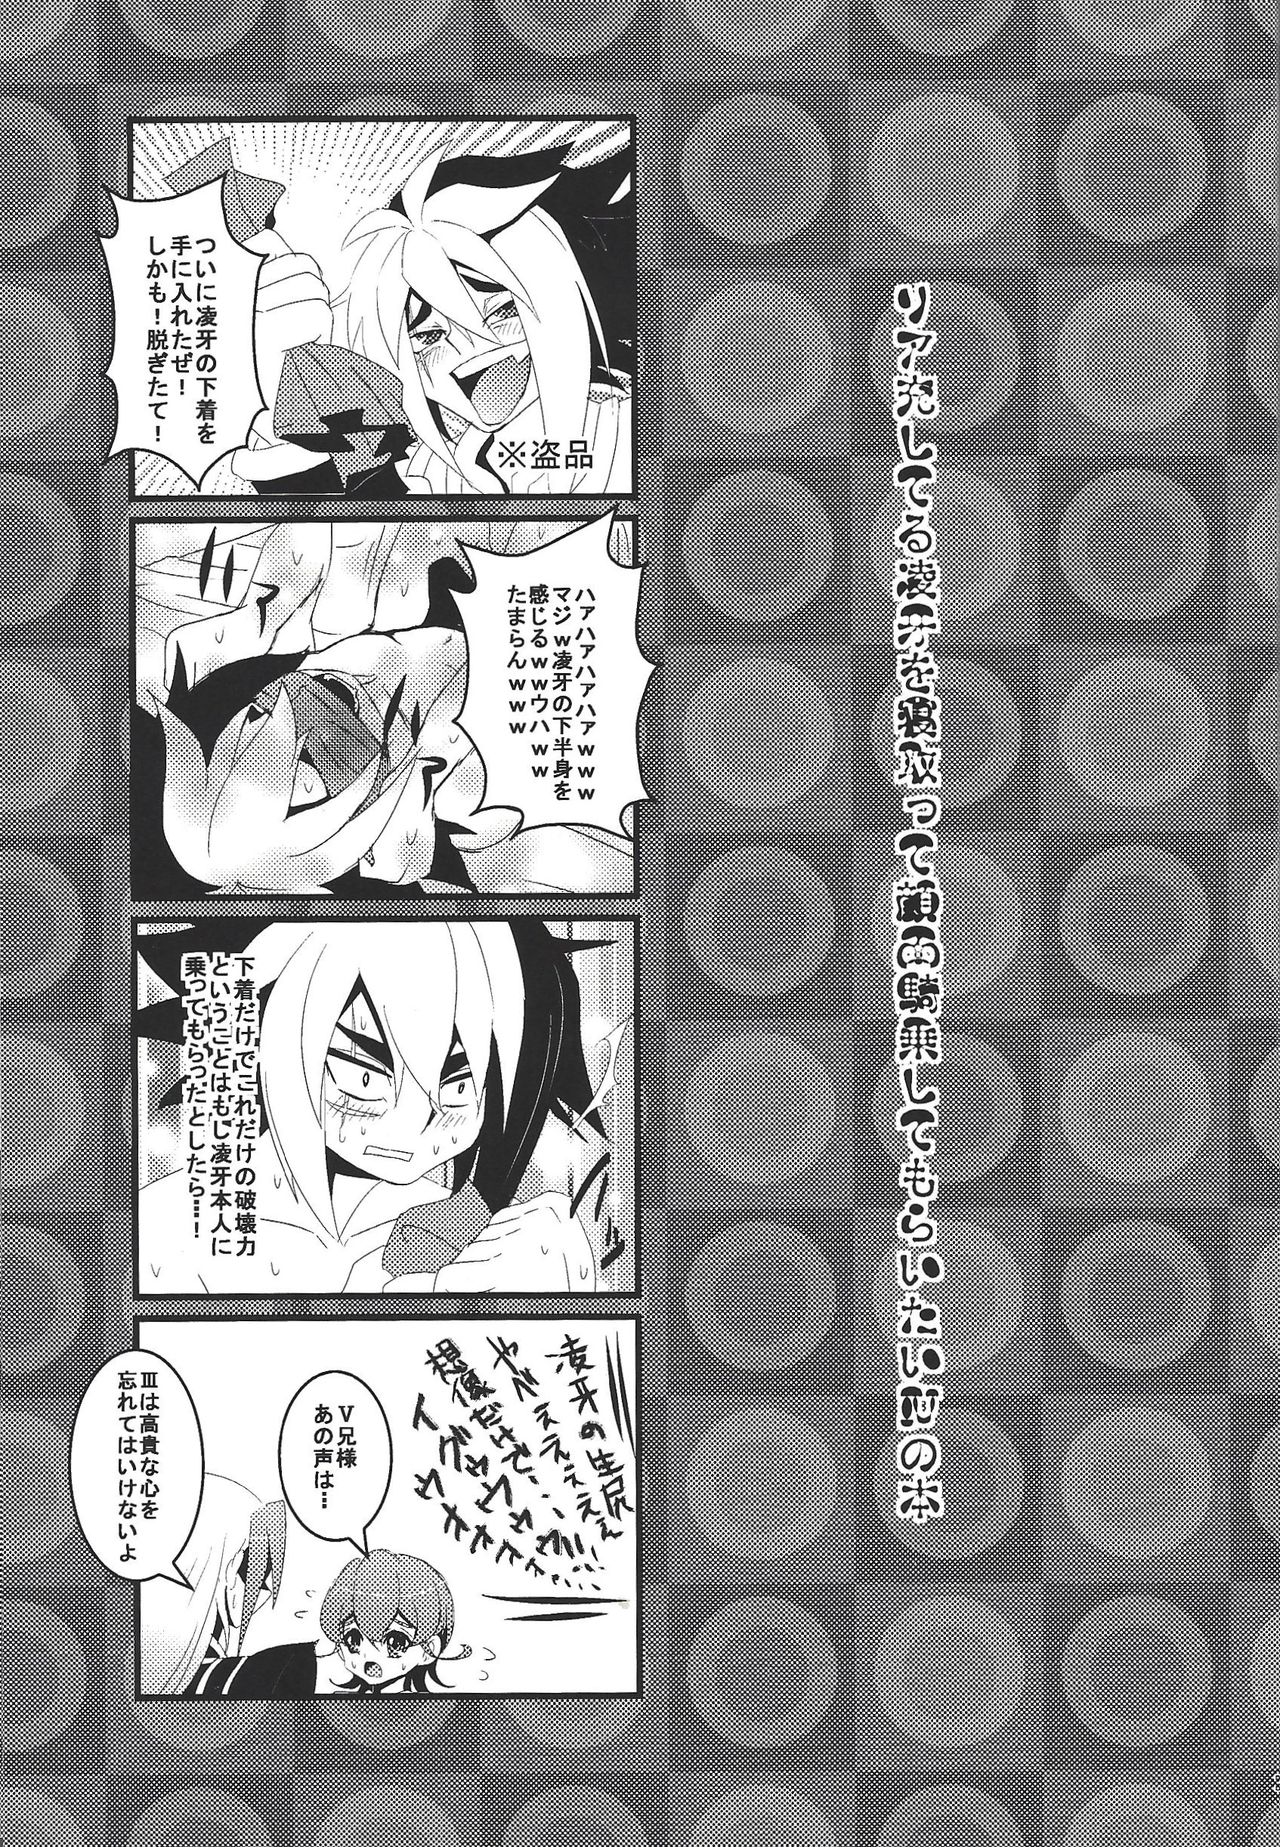 [Amanatsu ku~orite (Amu)] Riajū shi teru ryōga o ne totte ganmen kijō shite moraitai IV no hon (Yu-Gi-Oh! Zexal) page 2 full